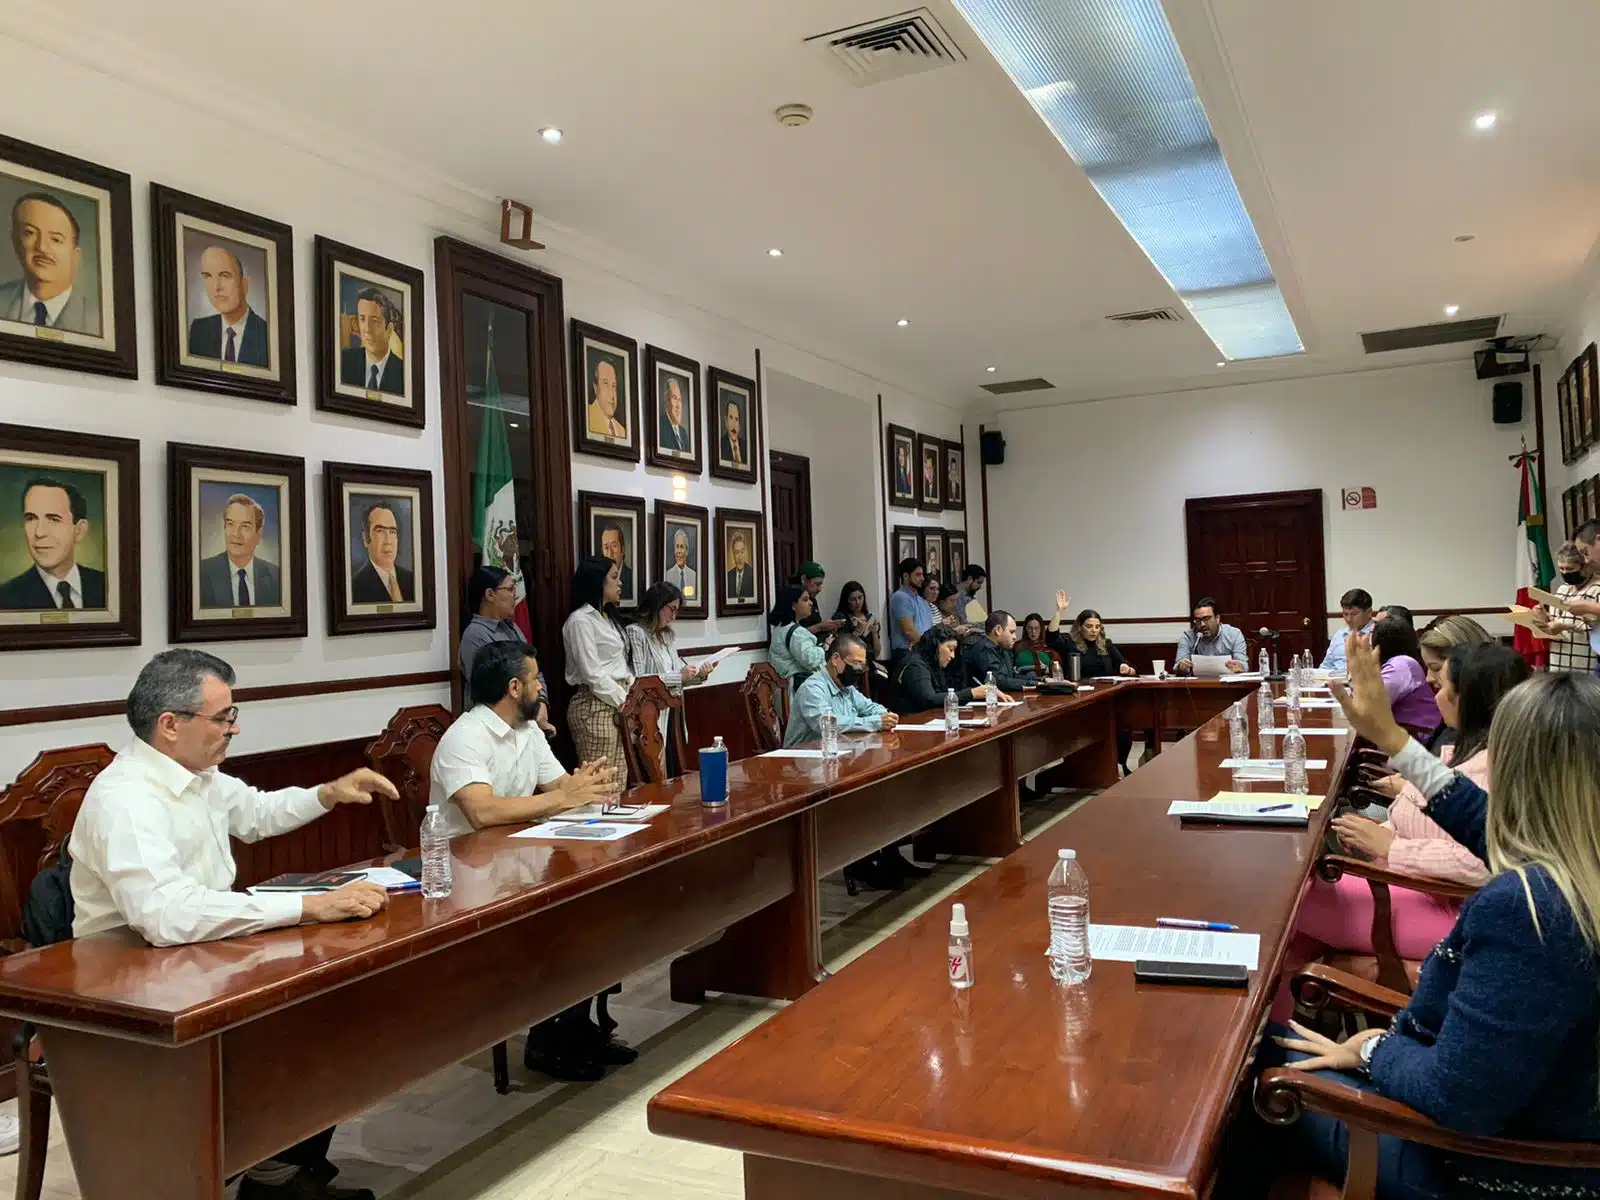 ¡Instituido! Aprueban la creación del “Premio Municipal de Derechos Humanos” en Culiacán